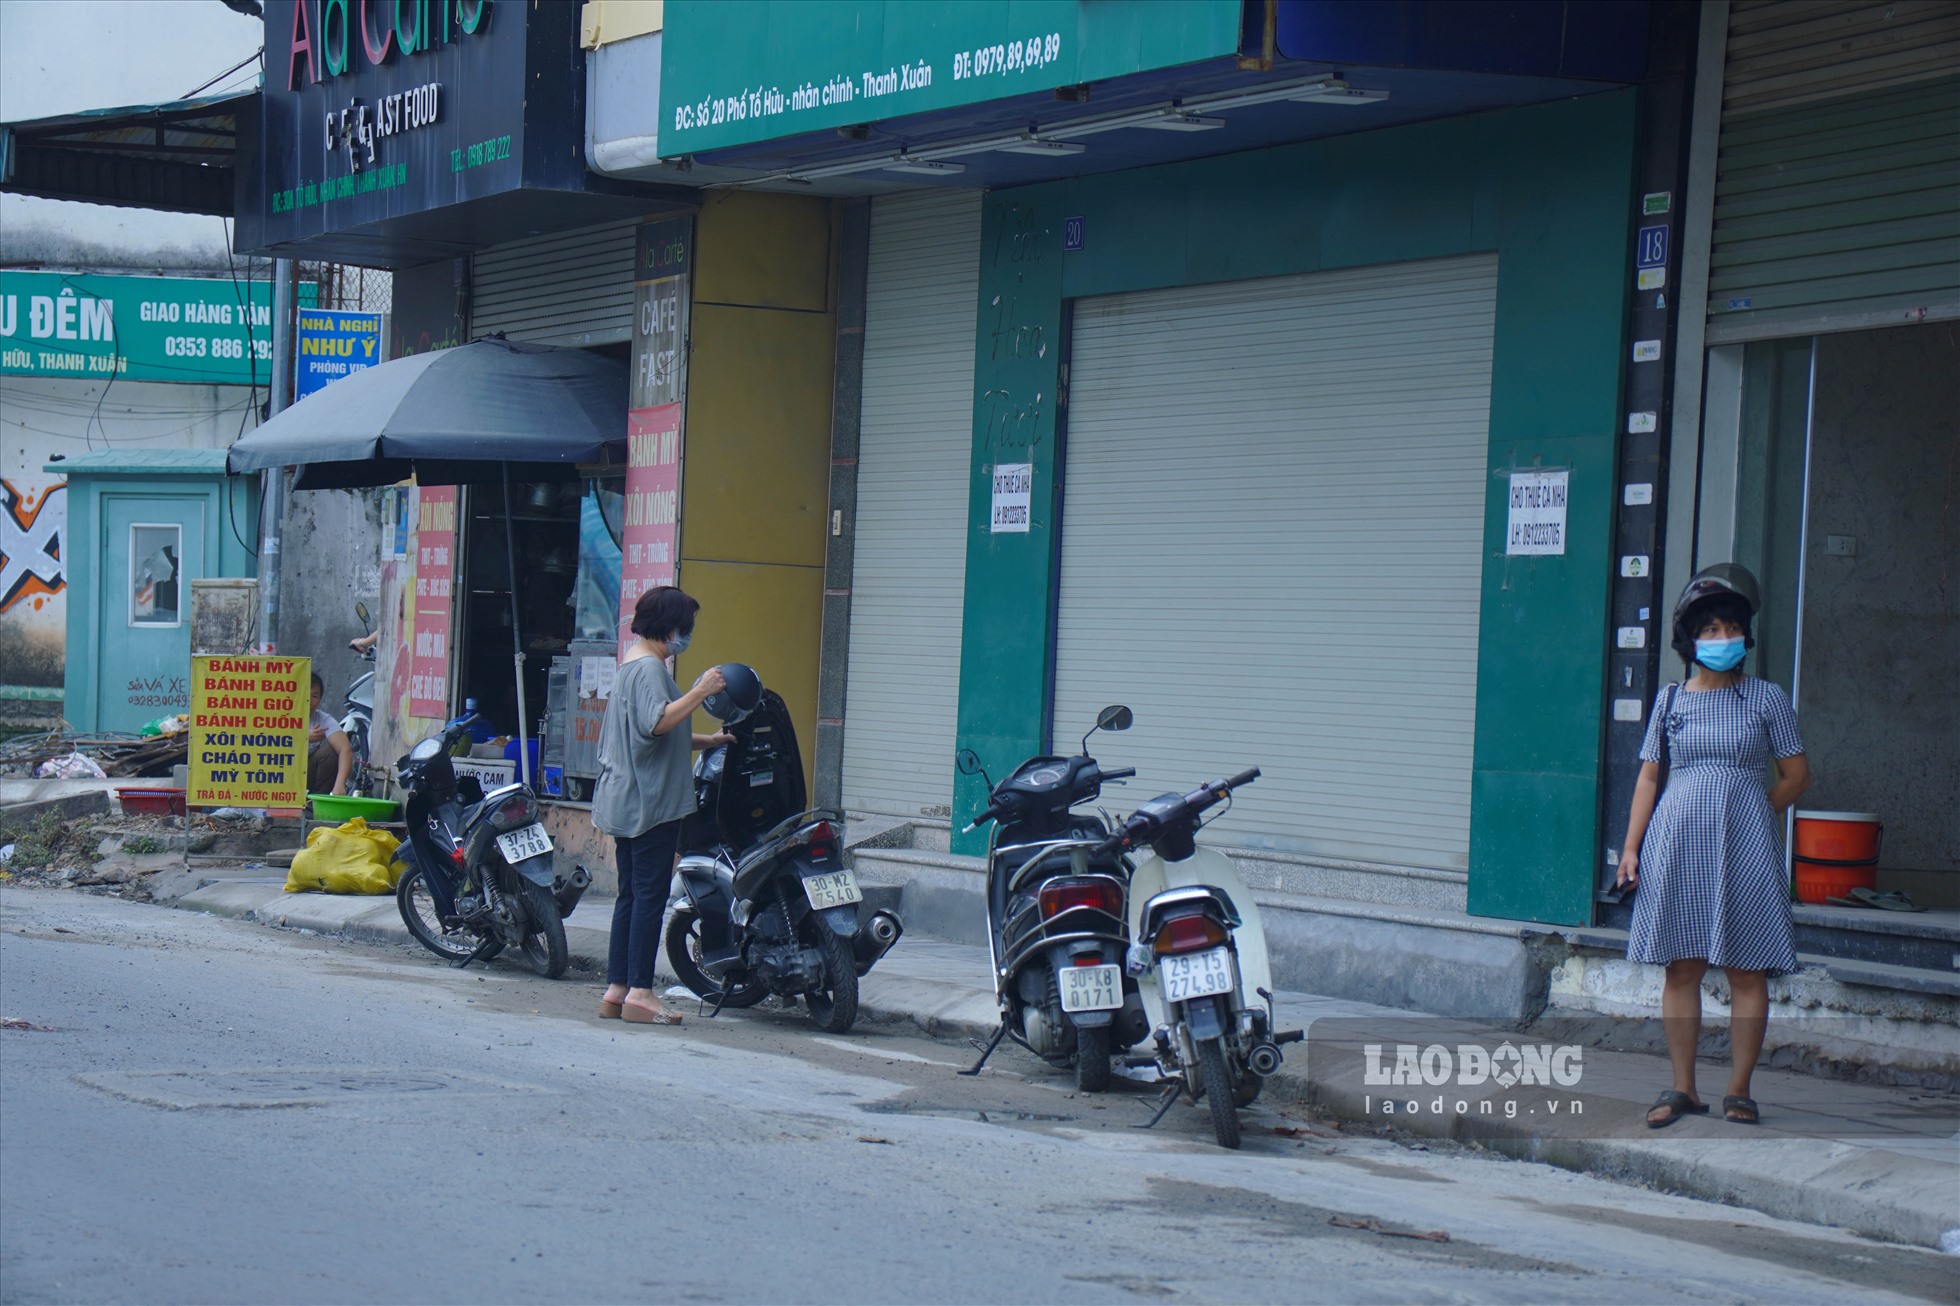 Việc vỉa hè bị xén khiến nhiều hộ dân không có chỗ để xe máy nên xuất hiện tình trạng la liệt xe máy để dưới lòng đường.